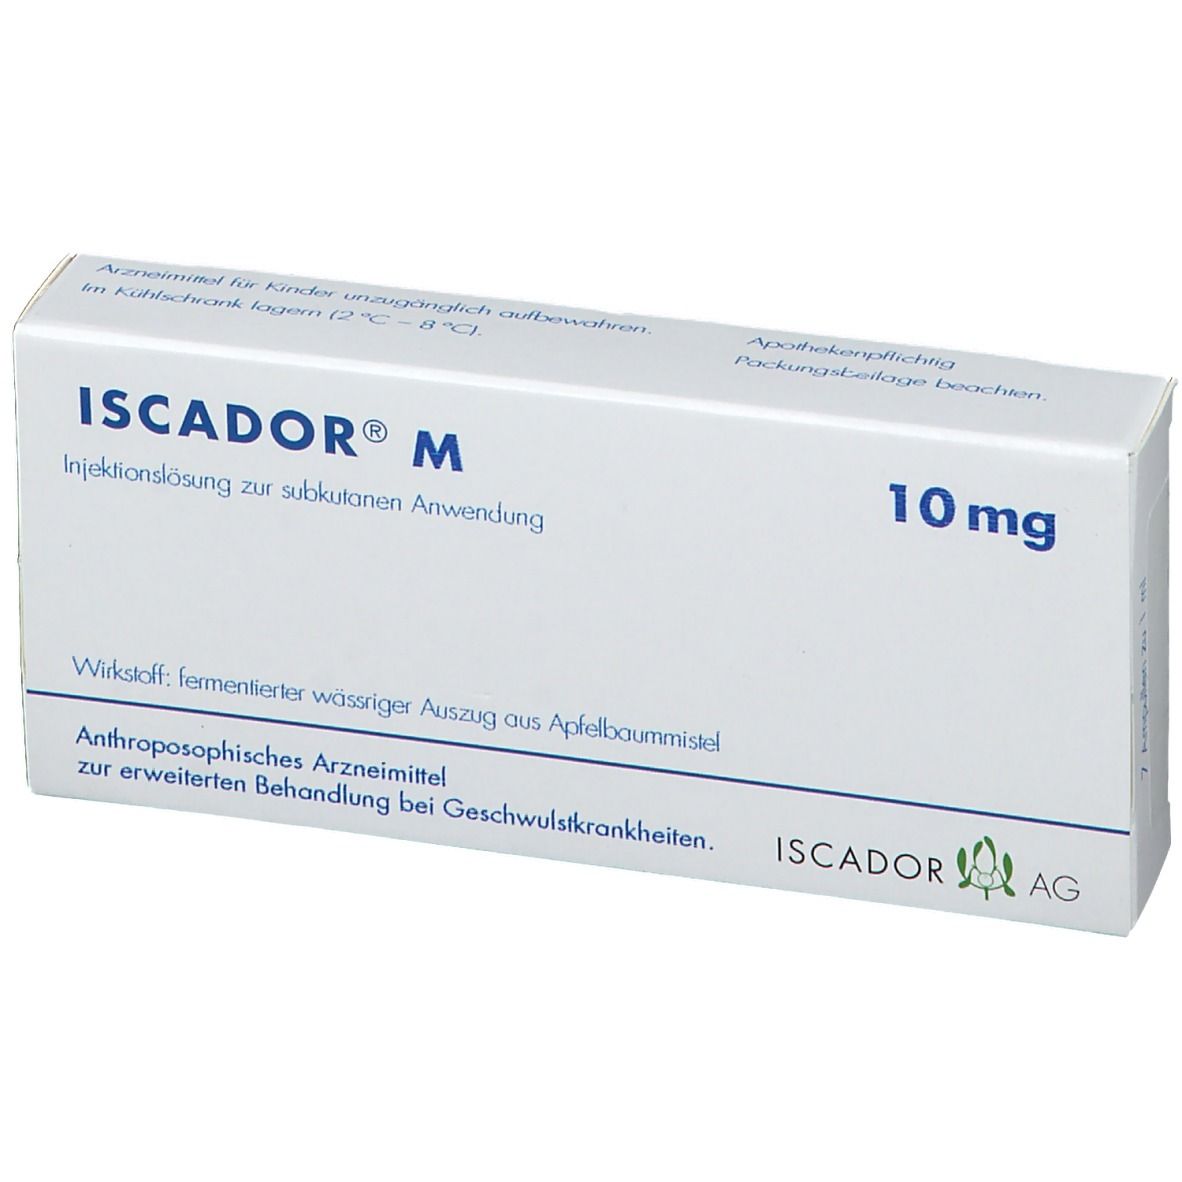 ISCADOR® M 10 mg